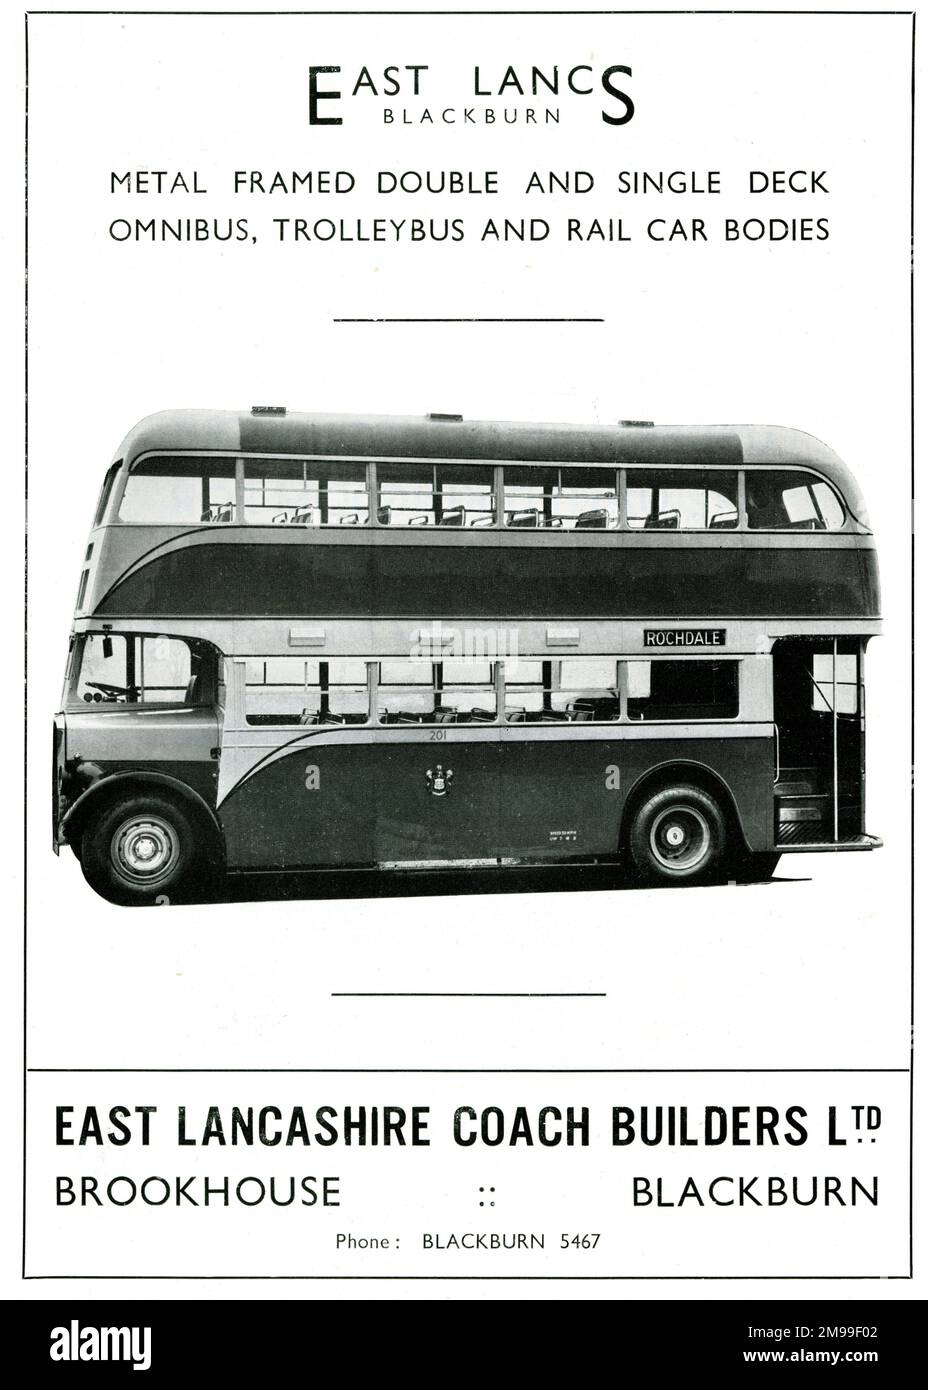 Double Decker Bus by East Lancashire Coach Builders, Blackburn. Stock Photo